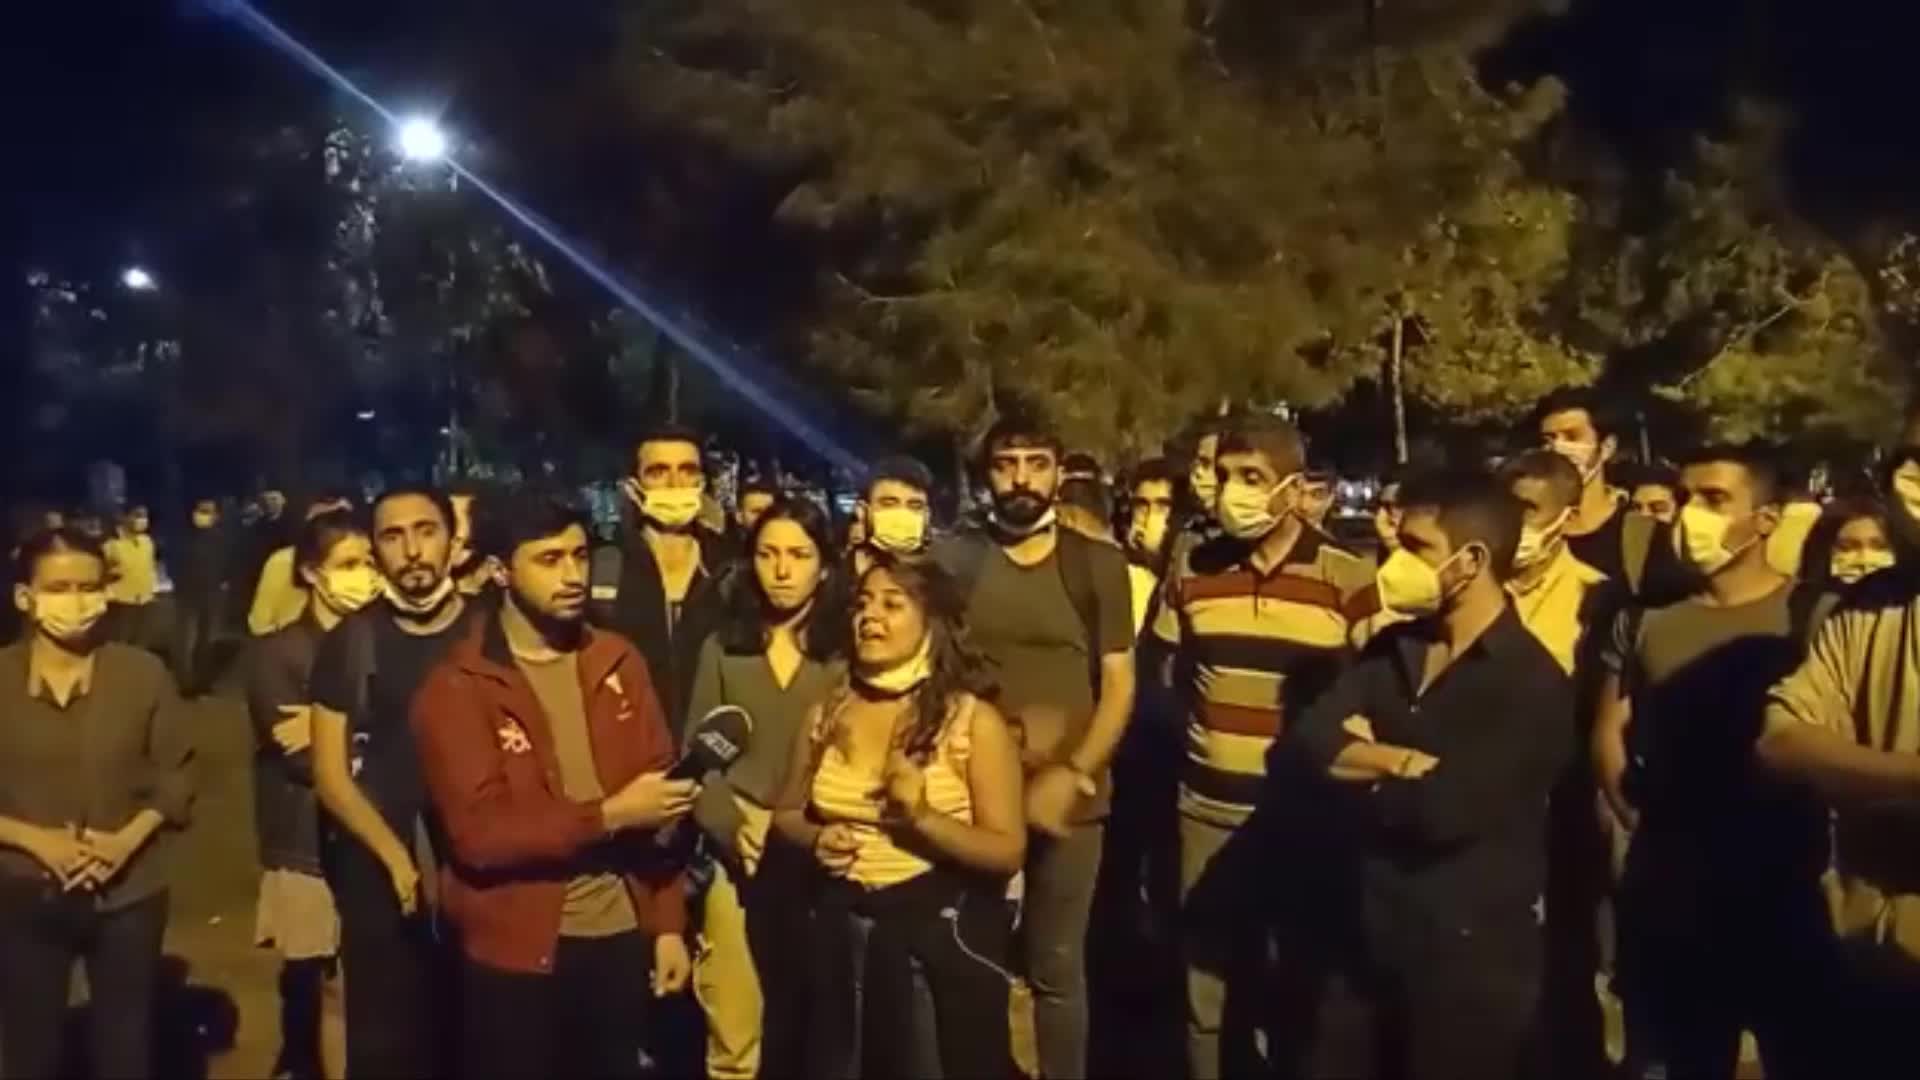 İzmir'de "Barınamıyoruz" eylemine katıldıkları için gözaltına alınan öğrenciler: "İzmir'in her yeri direniş alanıdır"